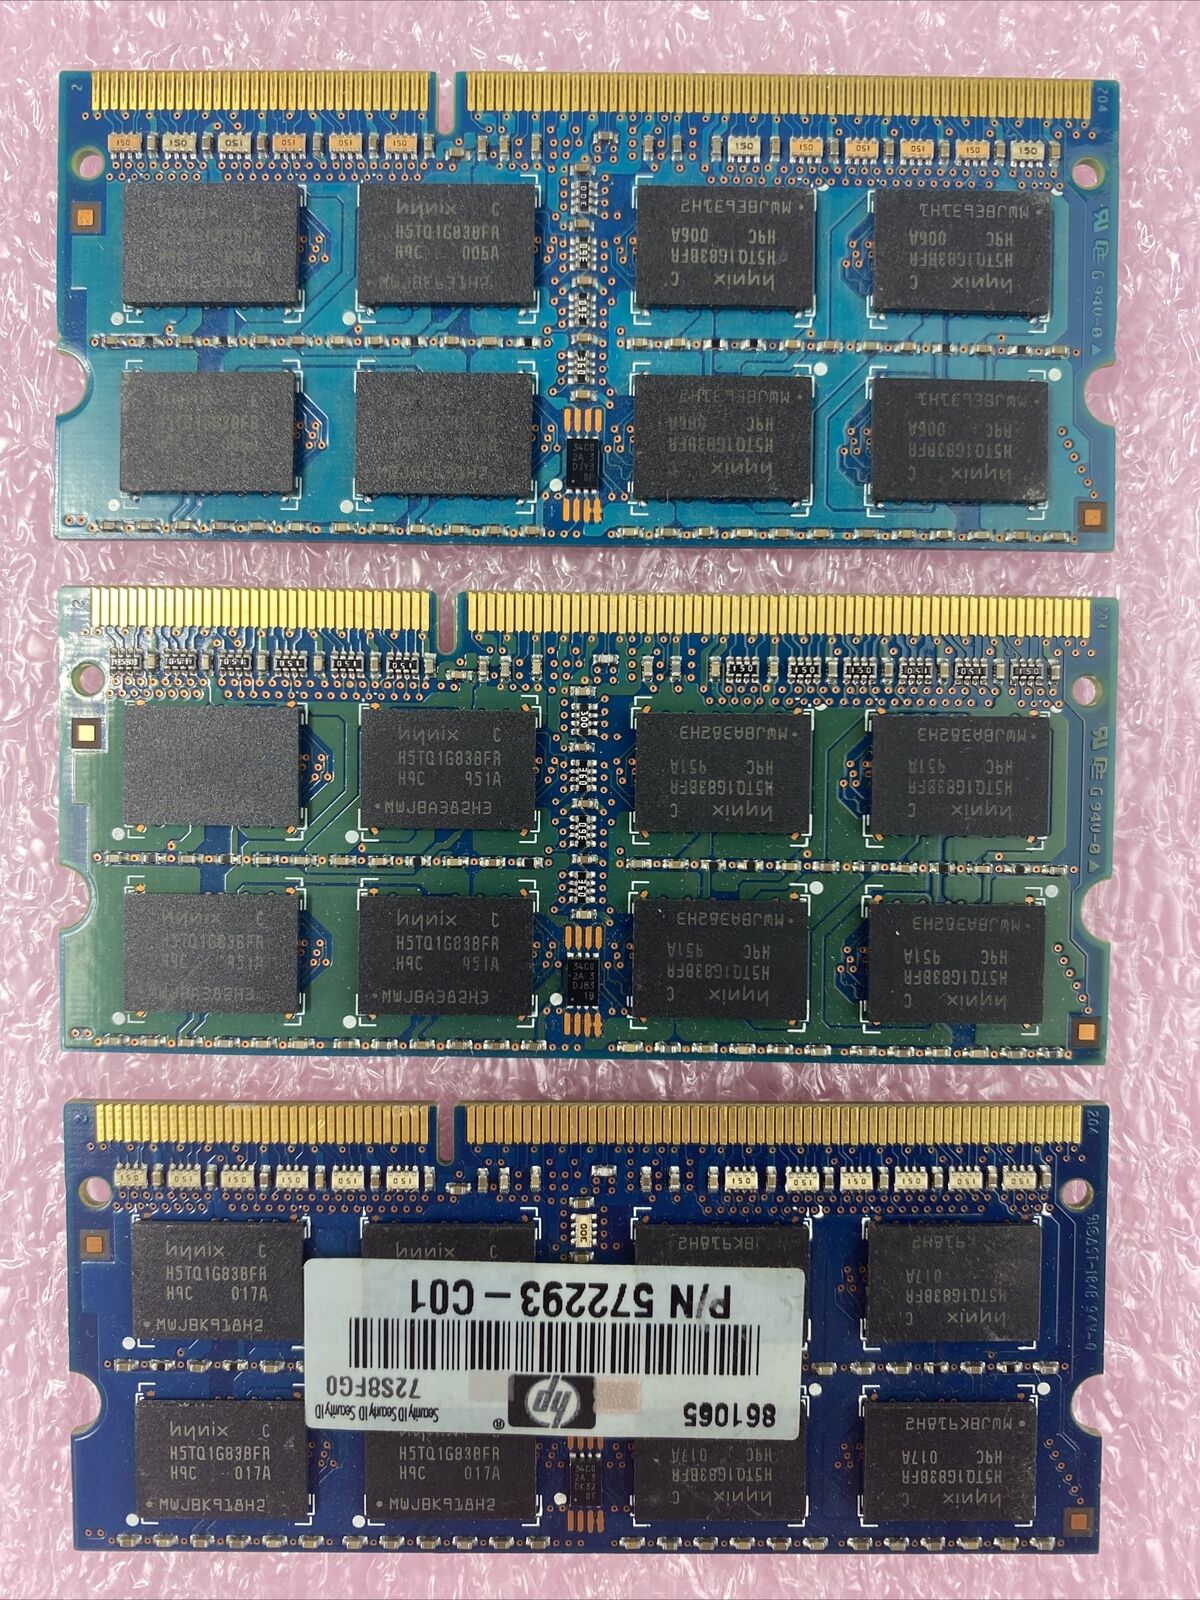 Lot( 3 ) 2GB Hynix HMT125S6BFR8C-H9 DDR3 2Rx8 PC3-10600S  So-DIMM Laptop RAM